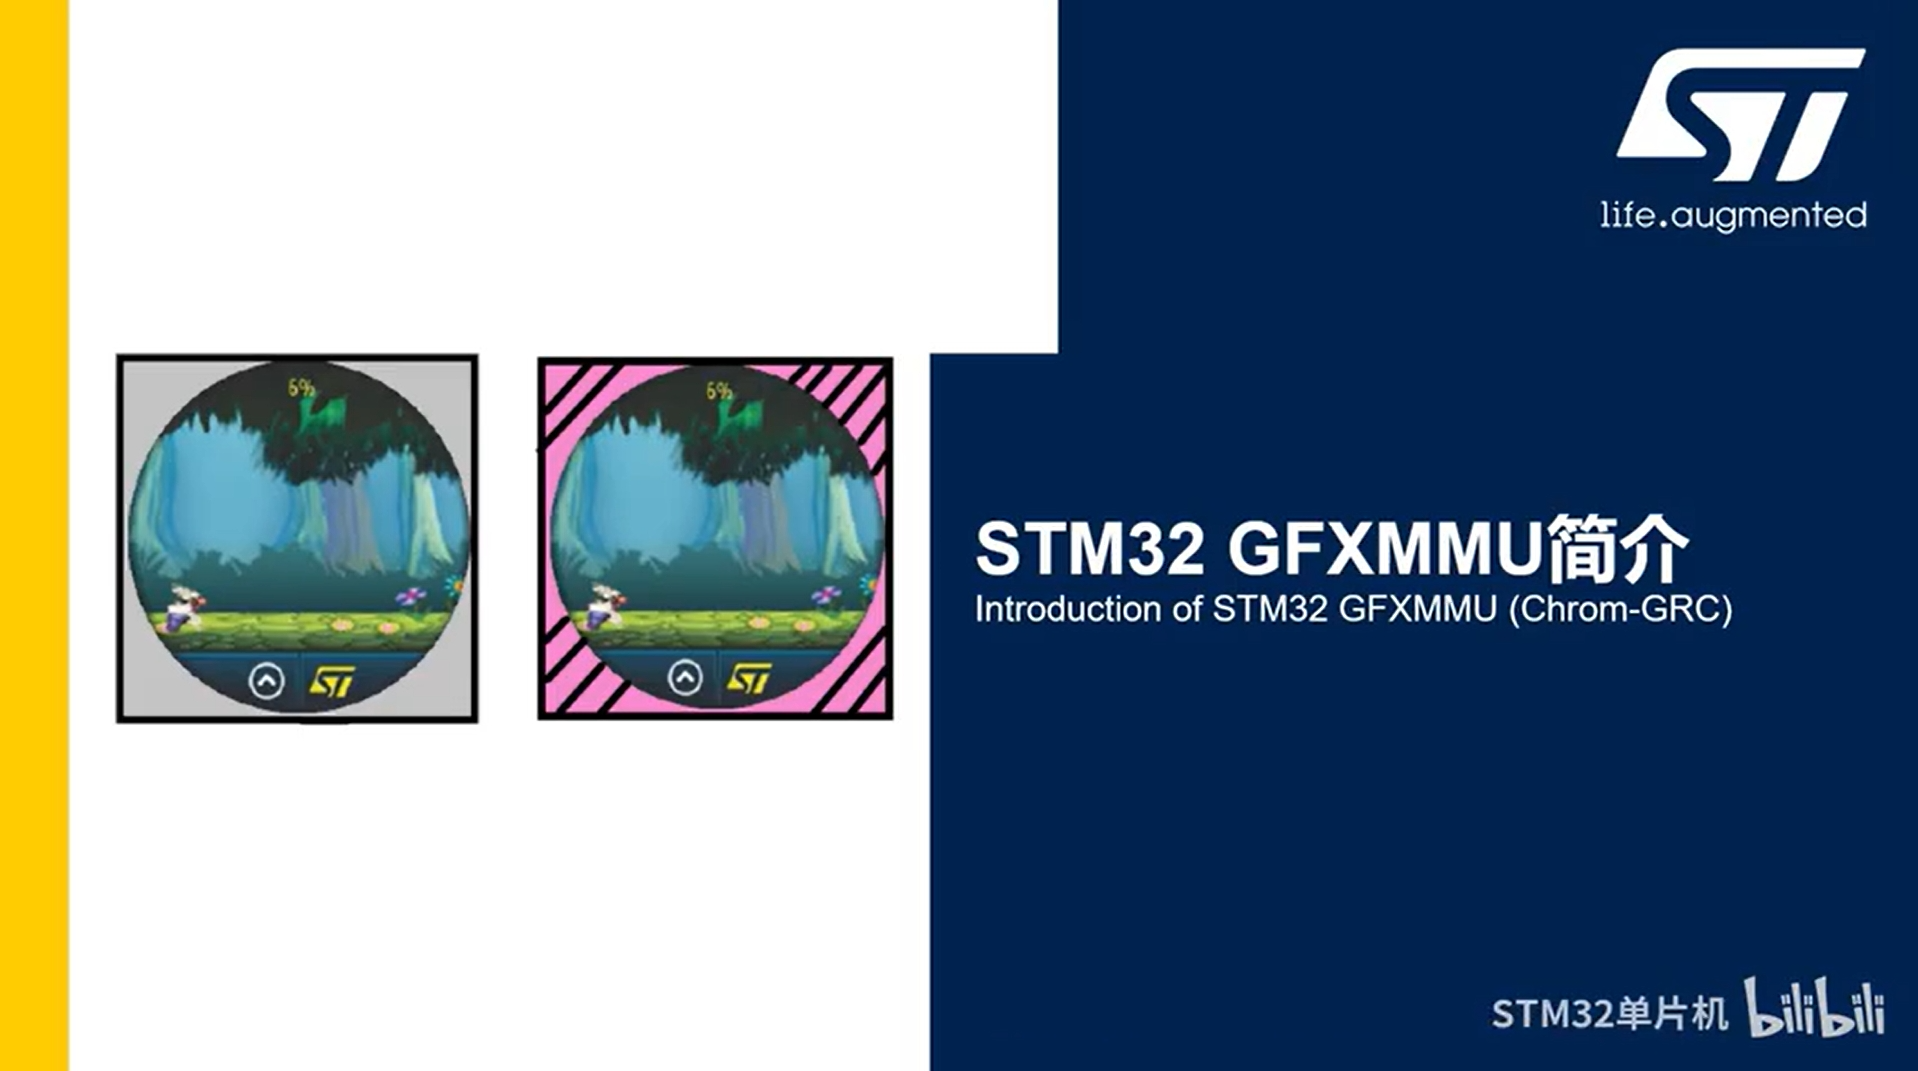 7.3.3 STM32 GUI开发技能分享 GFXMMU应用